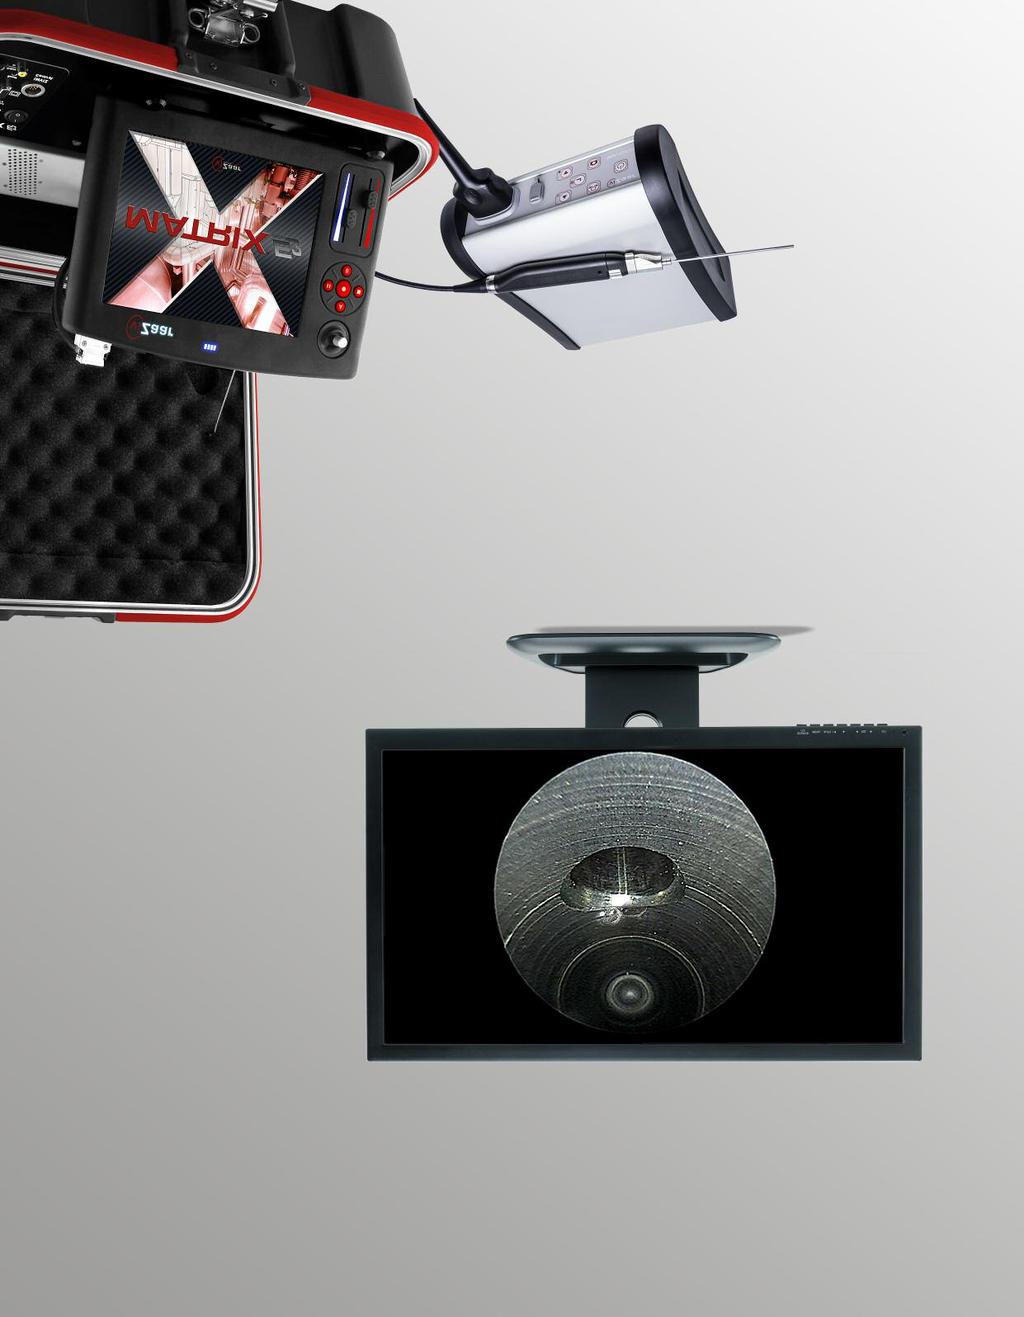 5 dokumentation mit hilfe einer aufsatzkamera wird das bild vom okularteil abgenommen und in ein elektronisches